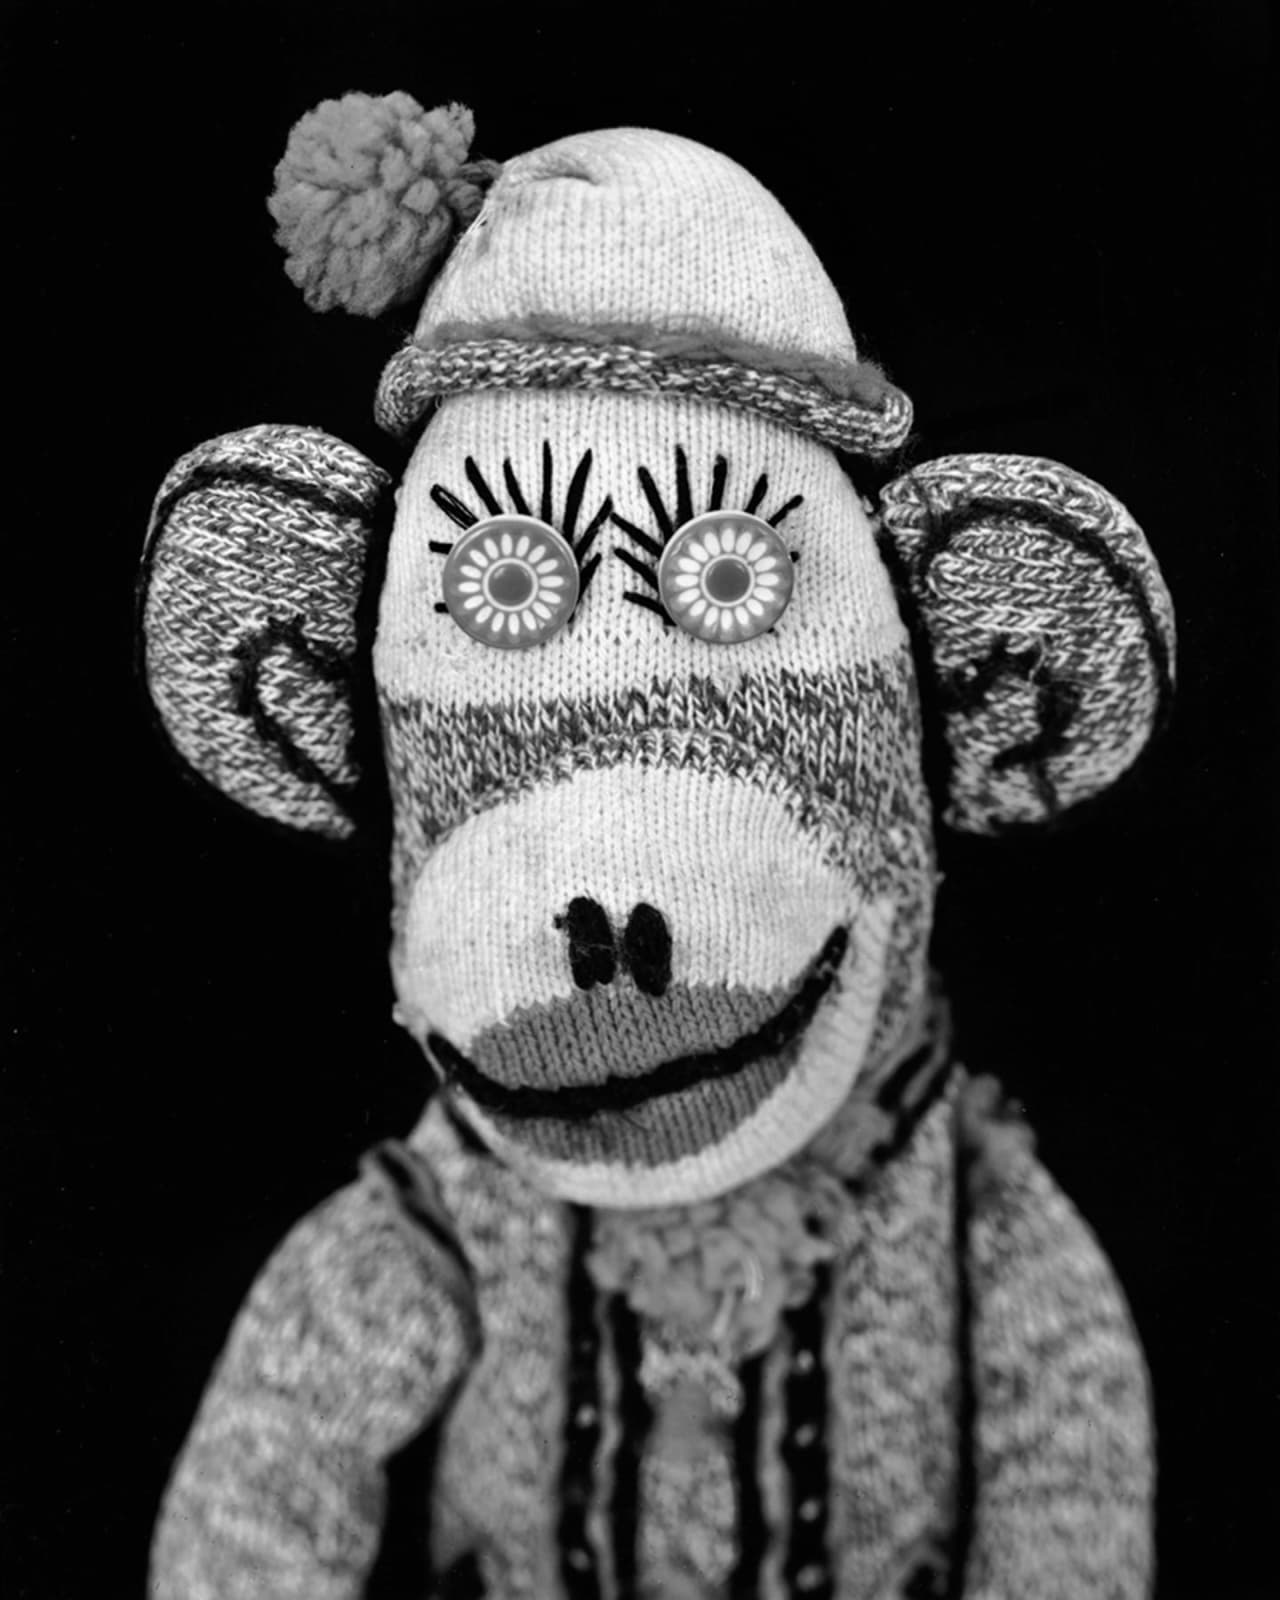 Arne Svenson, Sock Monkey 107, 2002